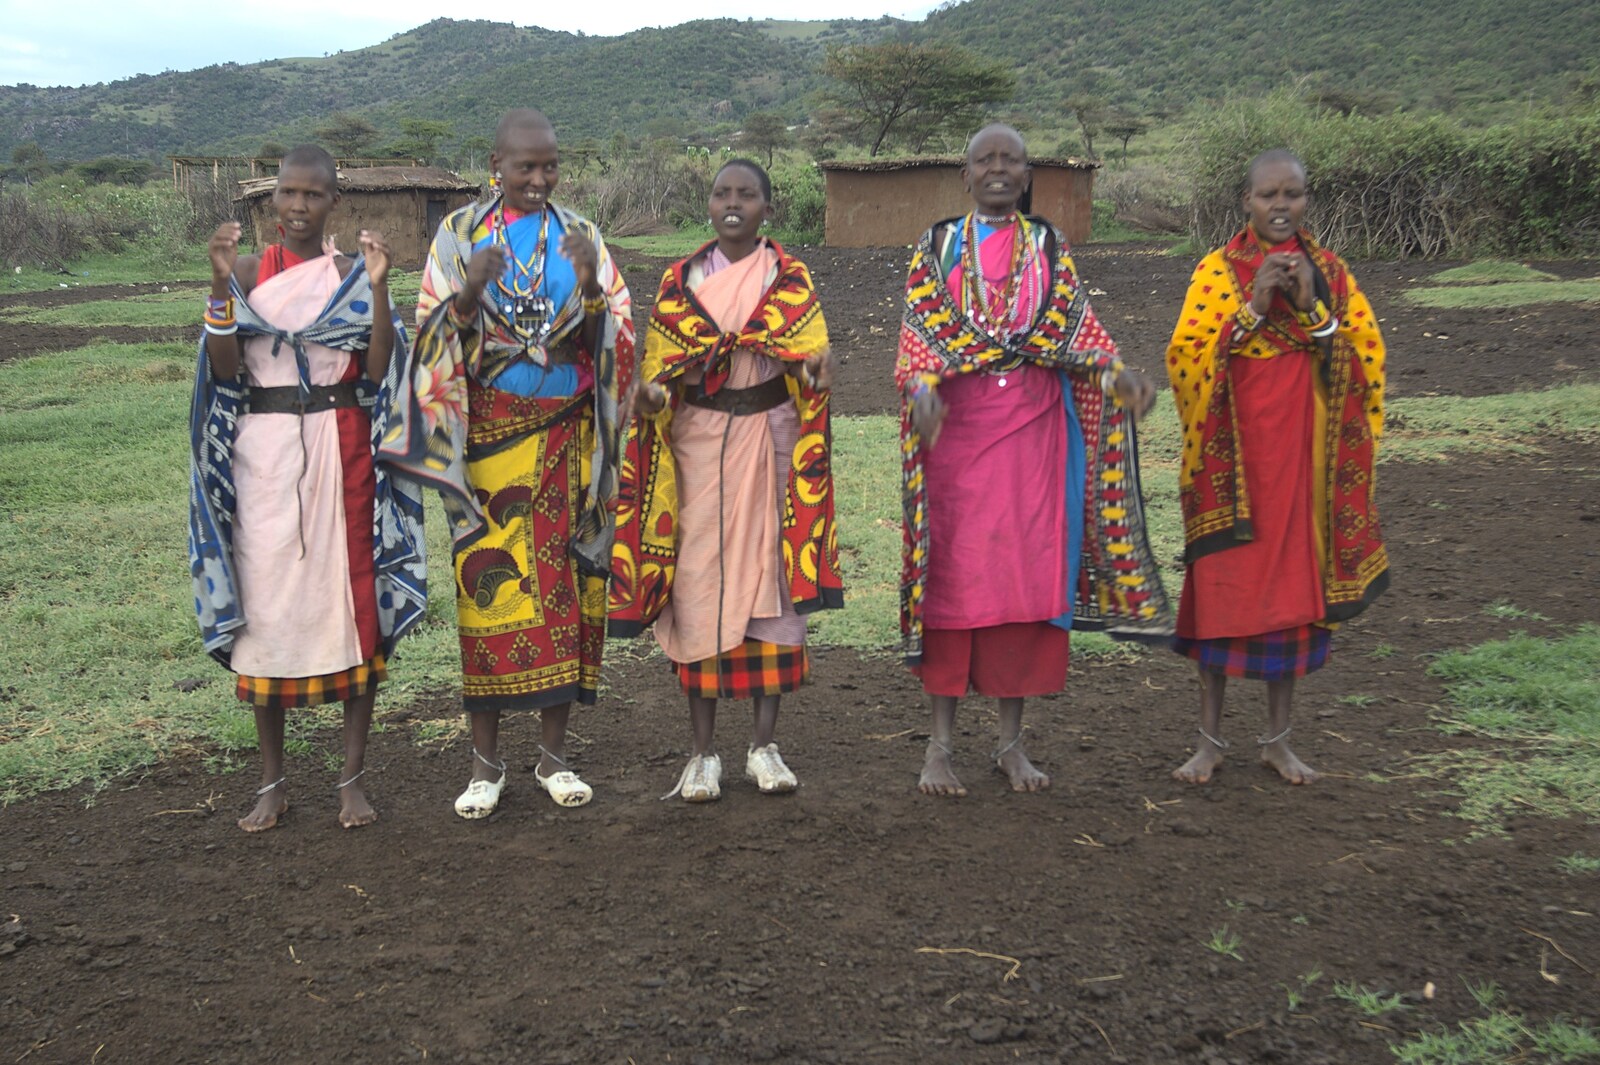 Some Maasai women perform a melancholy wedding song from Maasai Mara Safari and a Maasai Village, Ololaimutia, Kenya - 5th November 2010